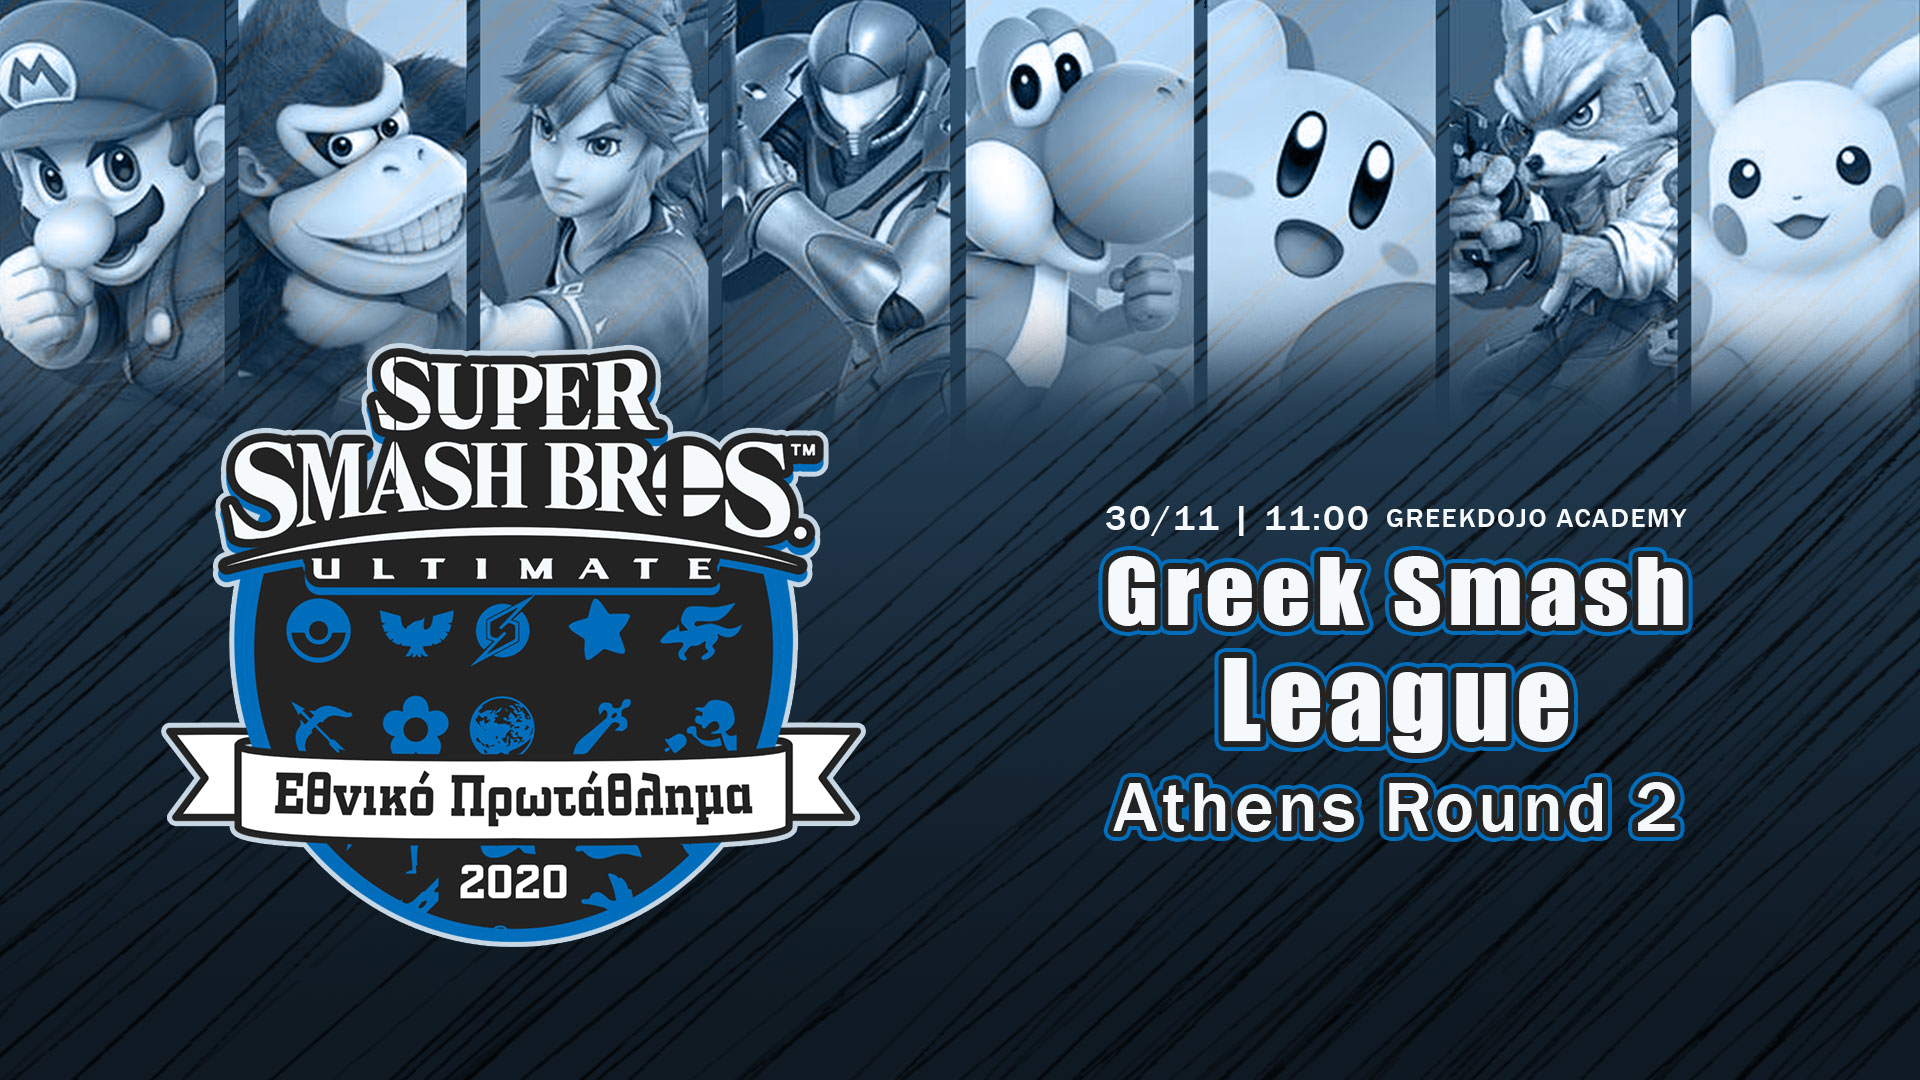 Greek Smash League 2020 Round 2 Athens